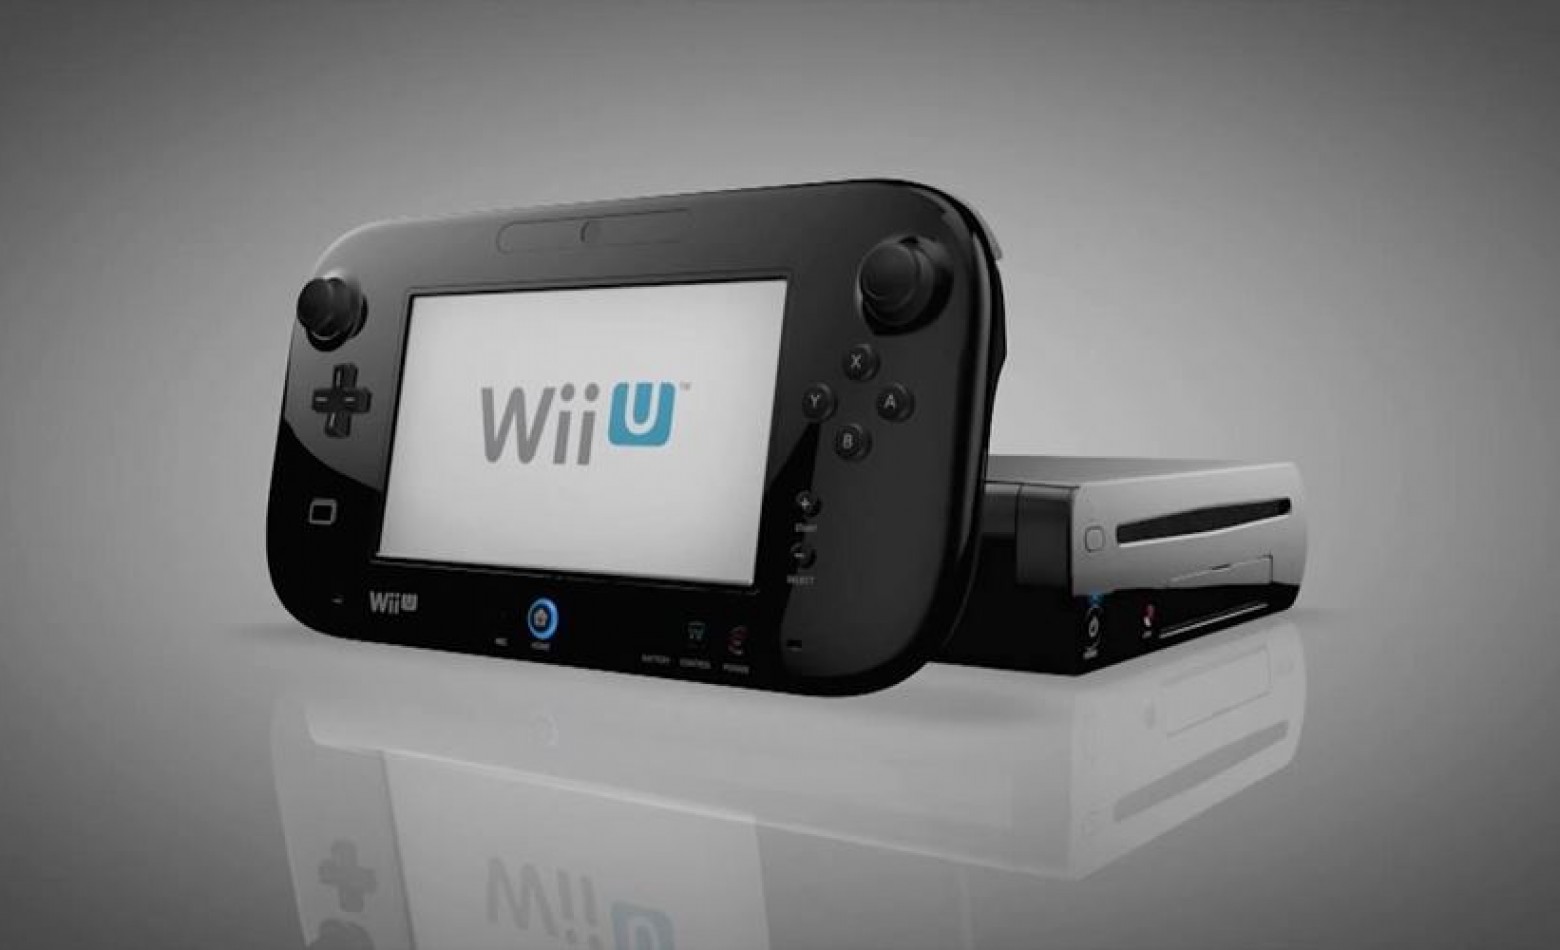 Vendas do Wii U voltam a cair no Japão